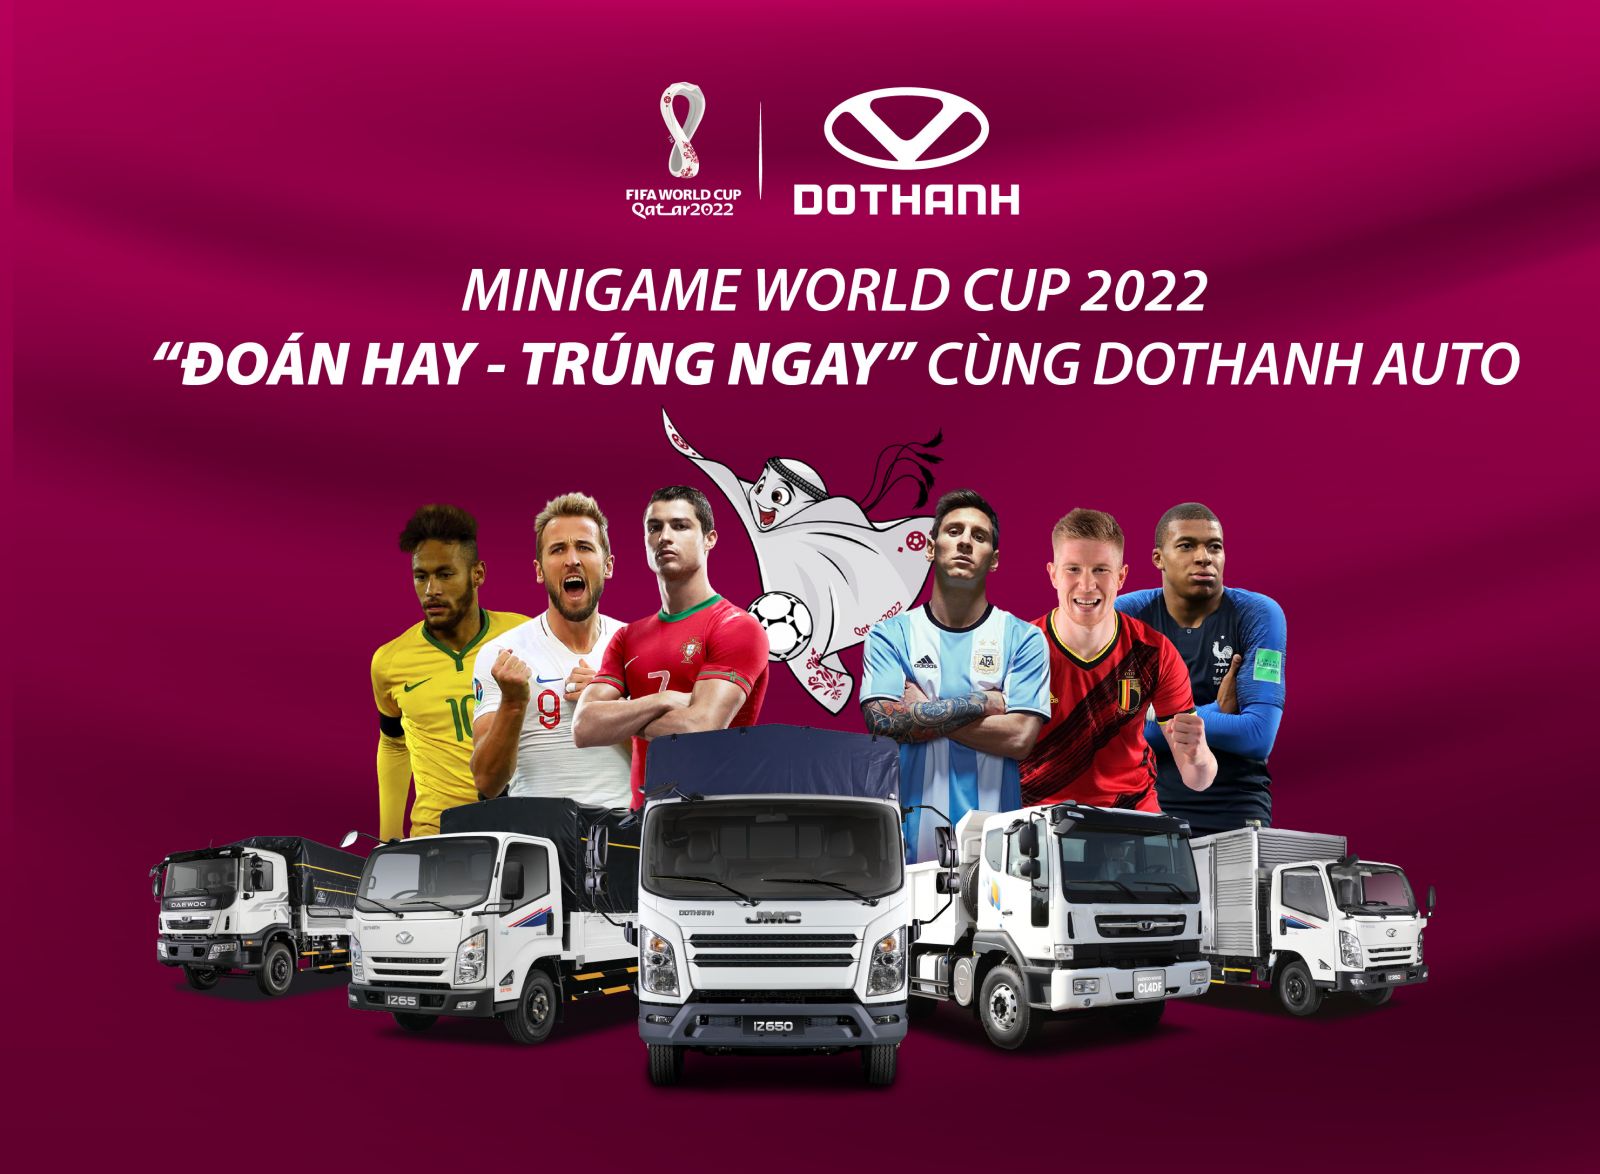 MINIGAME WORLD CUP 2022 “ĐOÁN HAY - TRÚNG NGAY” CÙNG DOTHANH AUTO